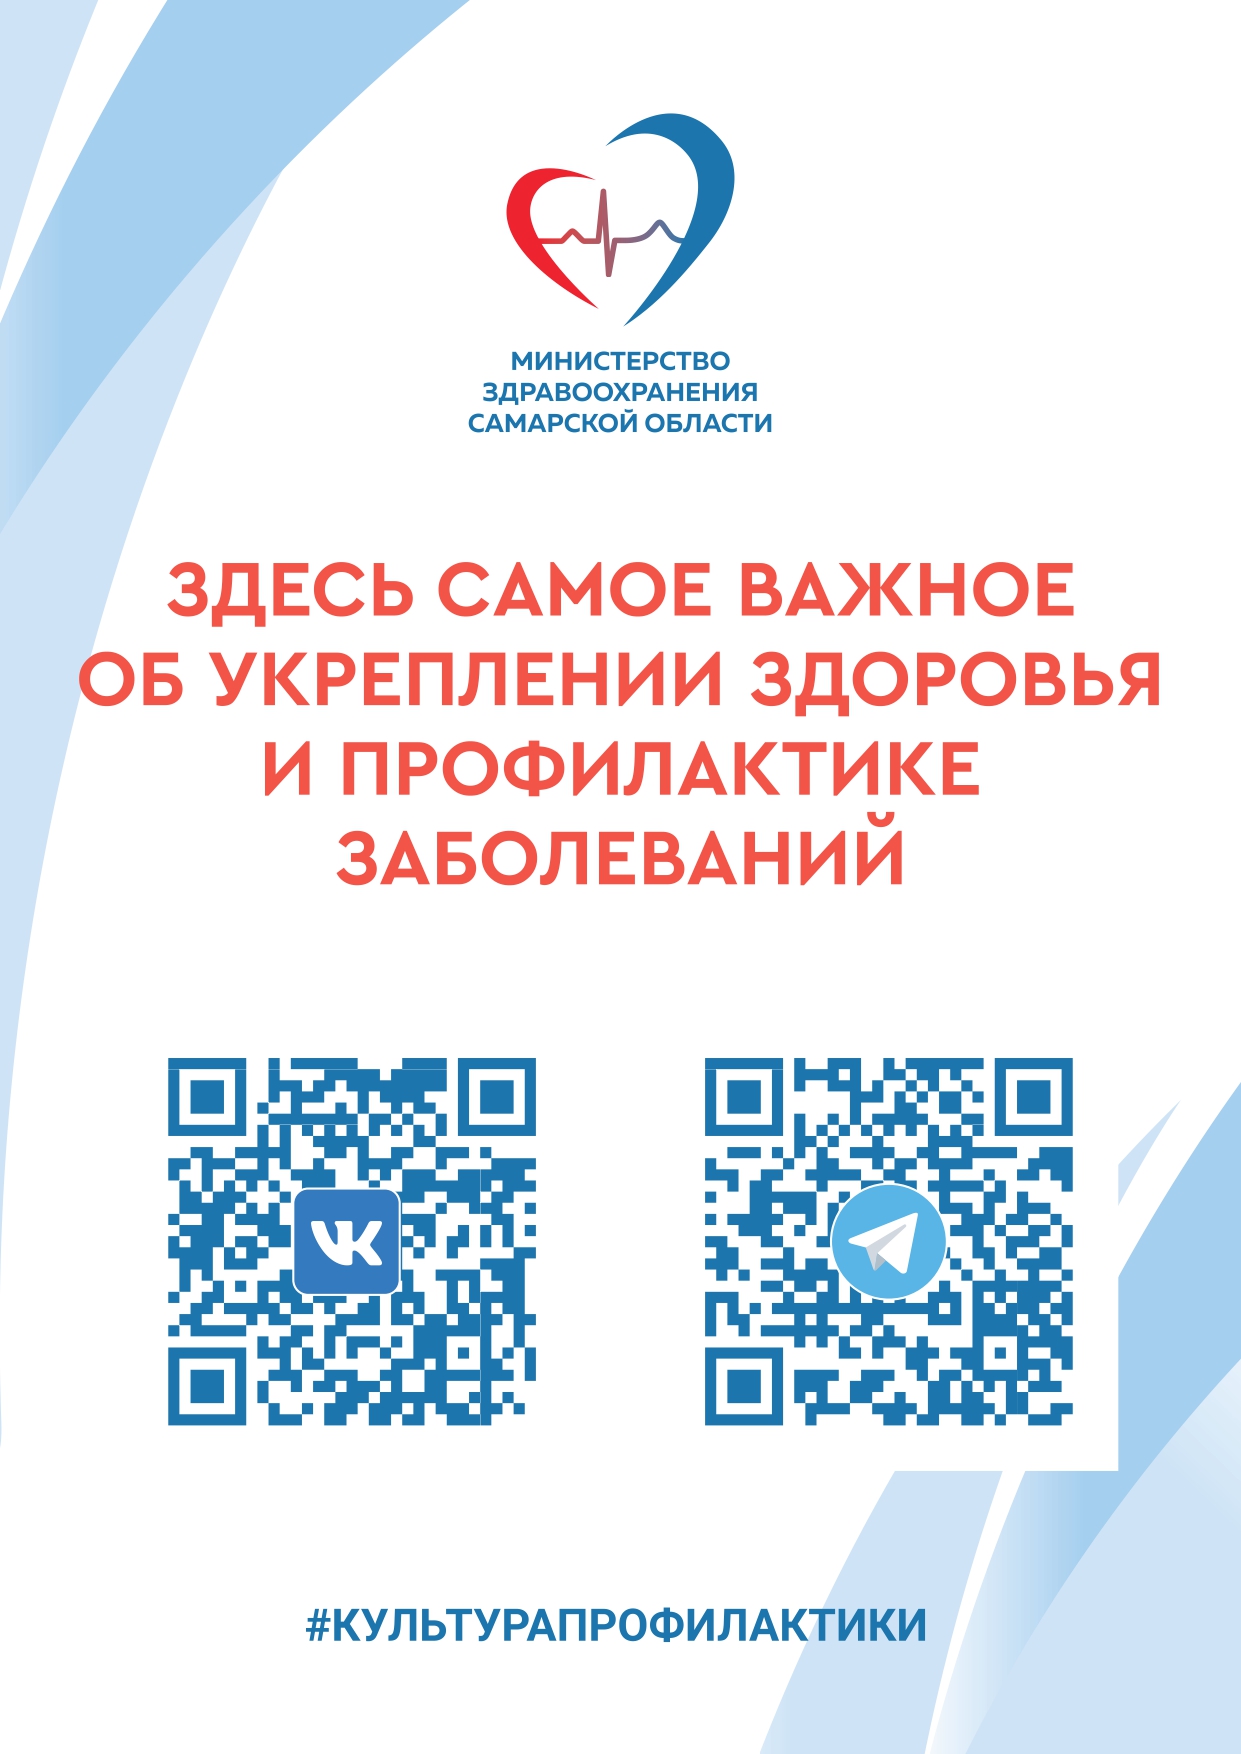 Подписывайтесь на сообщества министерства здравоохранения Самарской области!